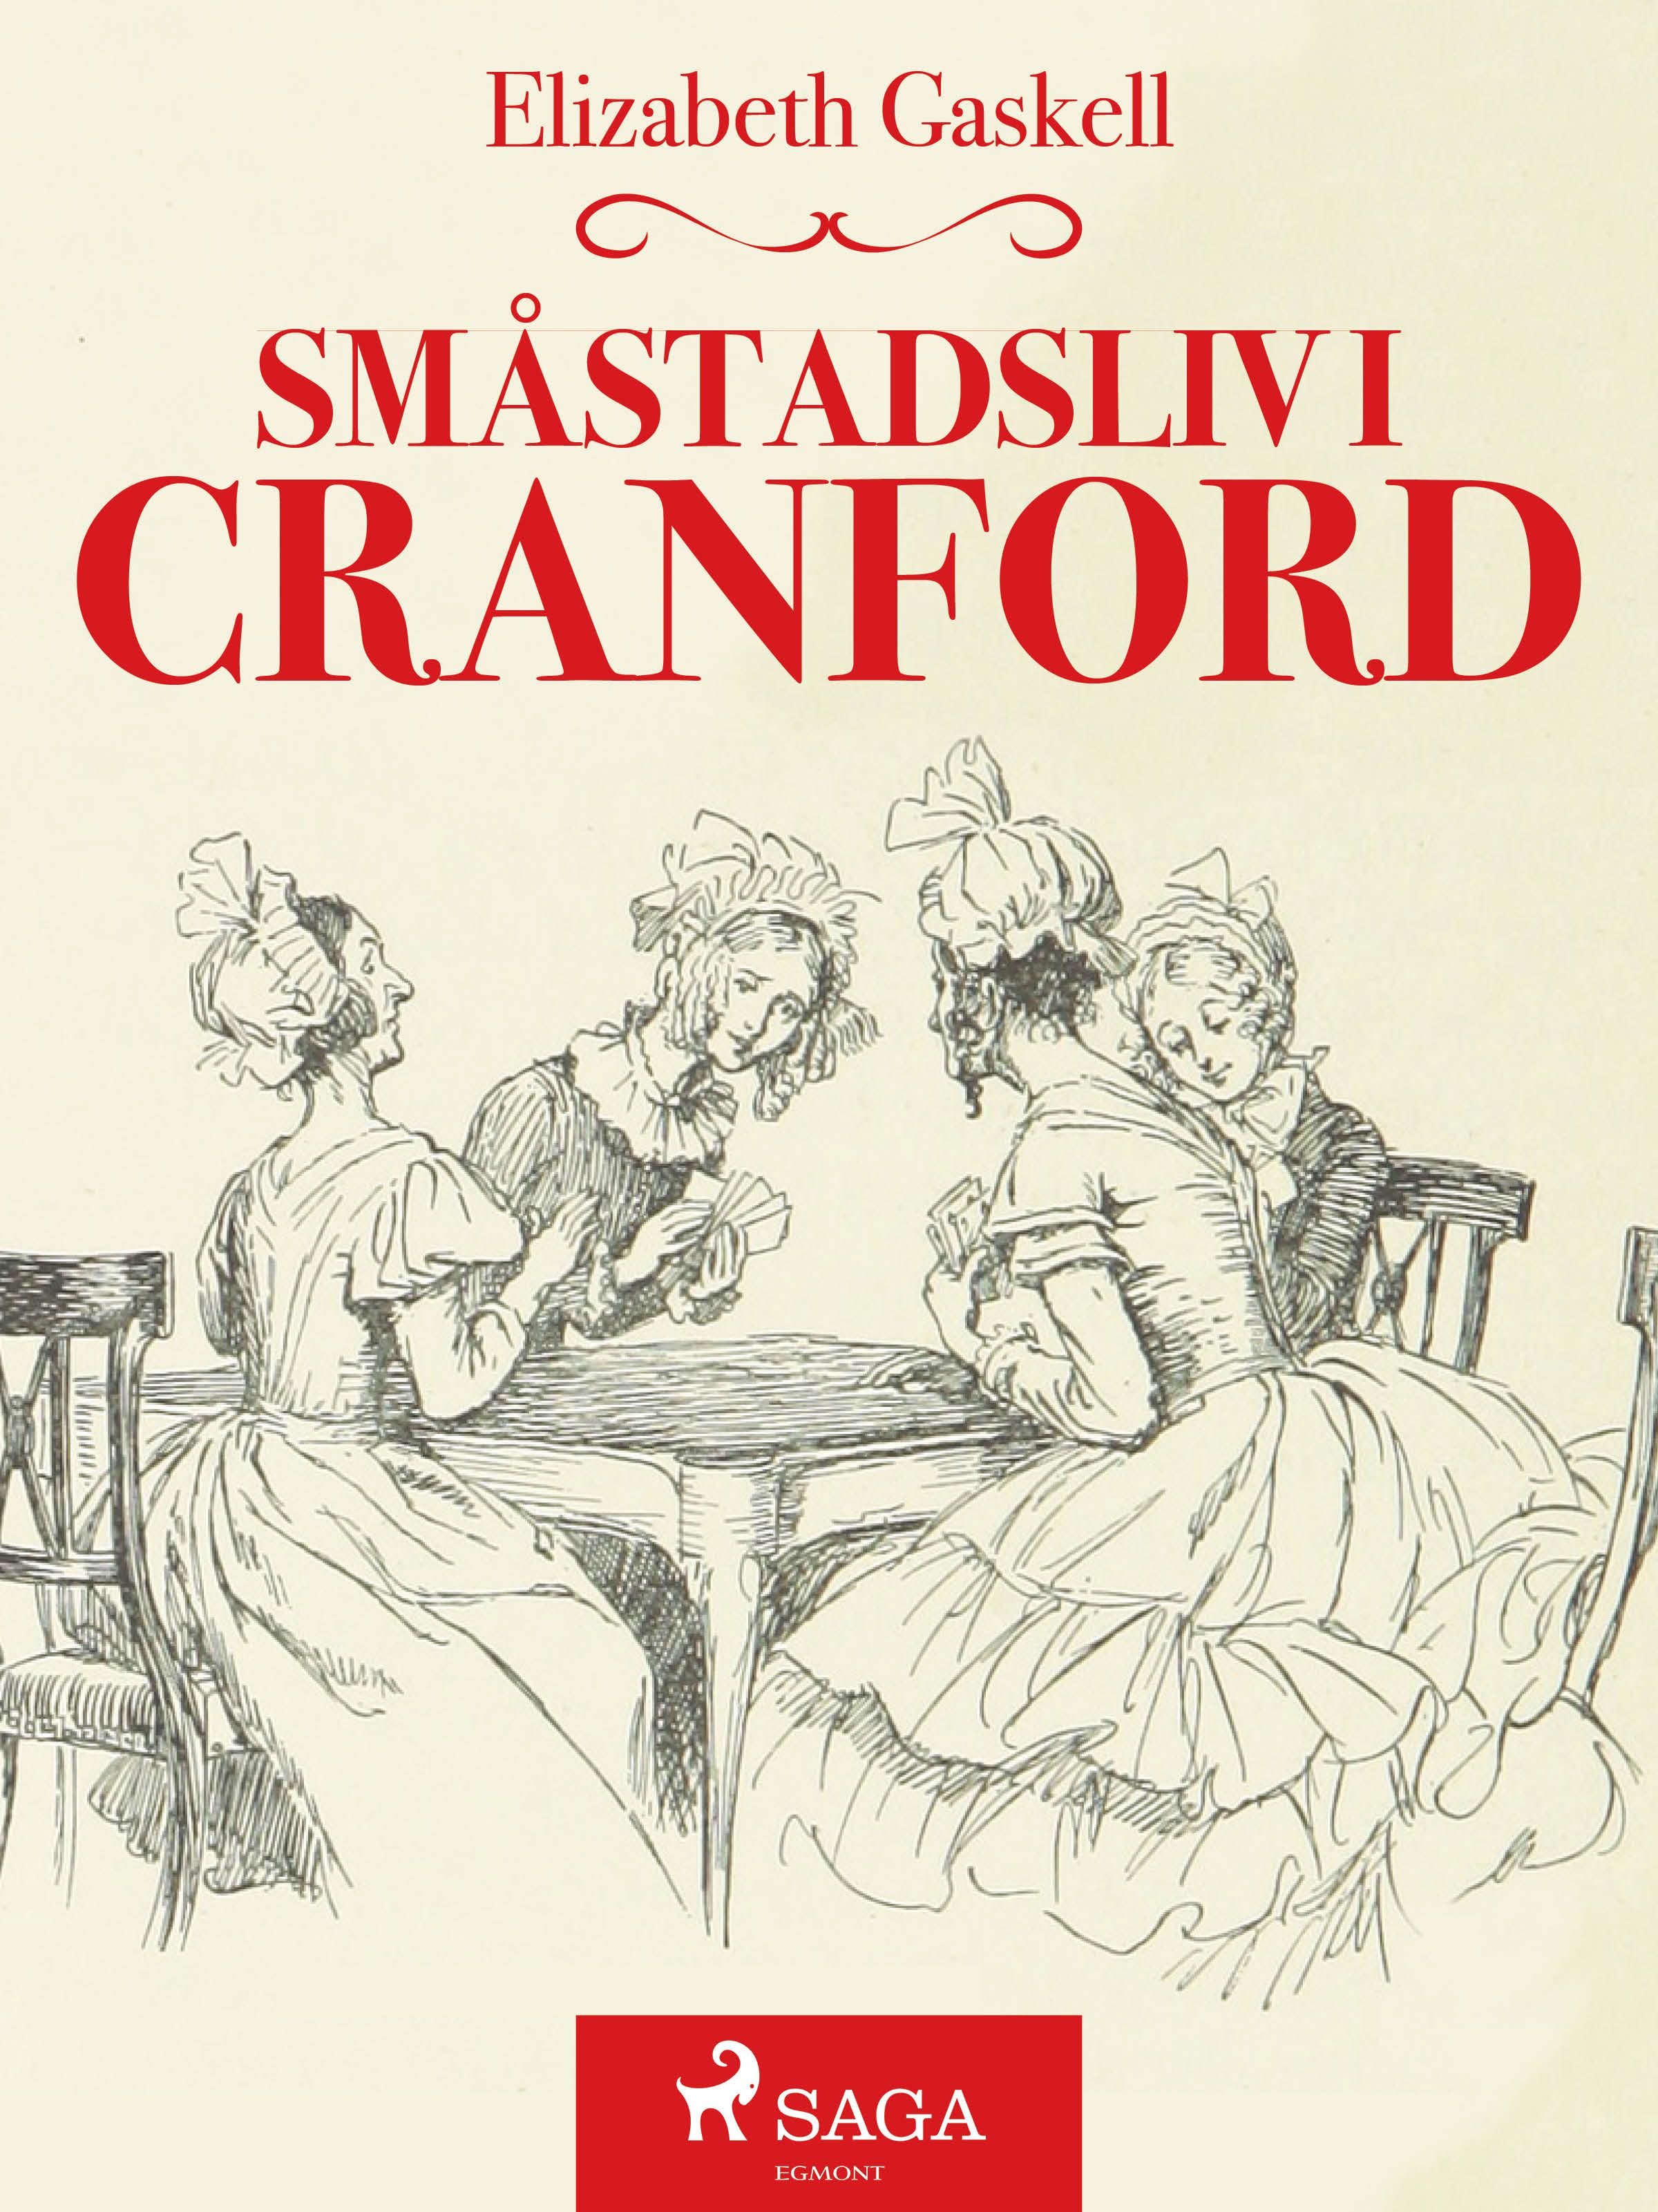 Småstadsliv i Cranford, ljudbok av Elizabeth Gaskell